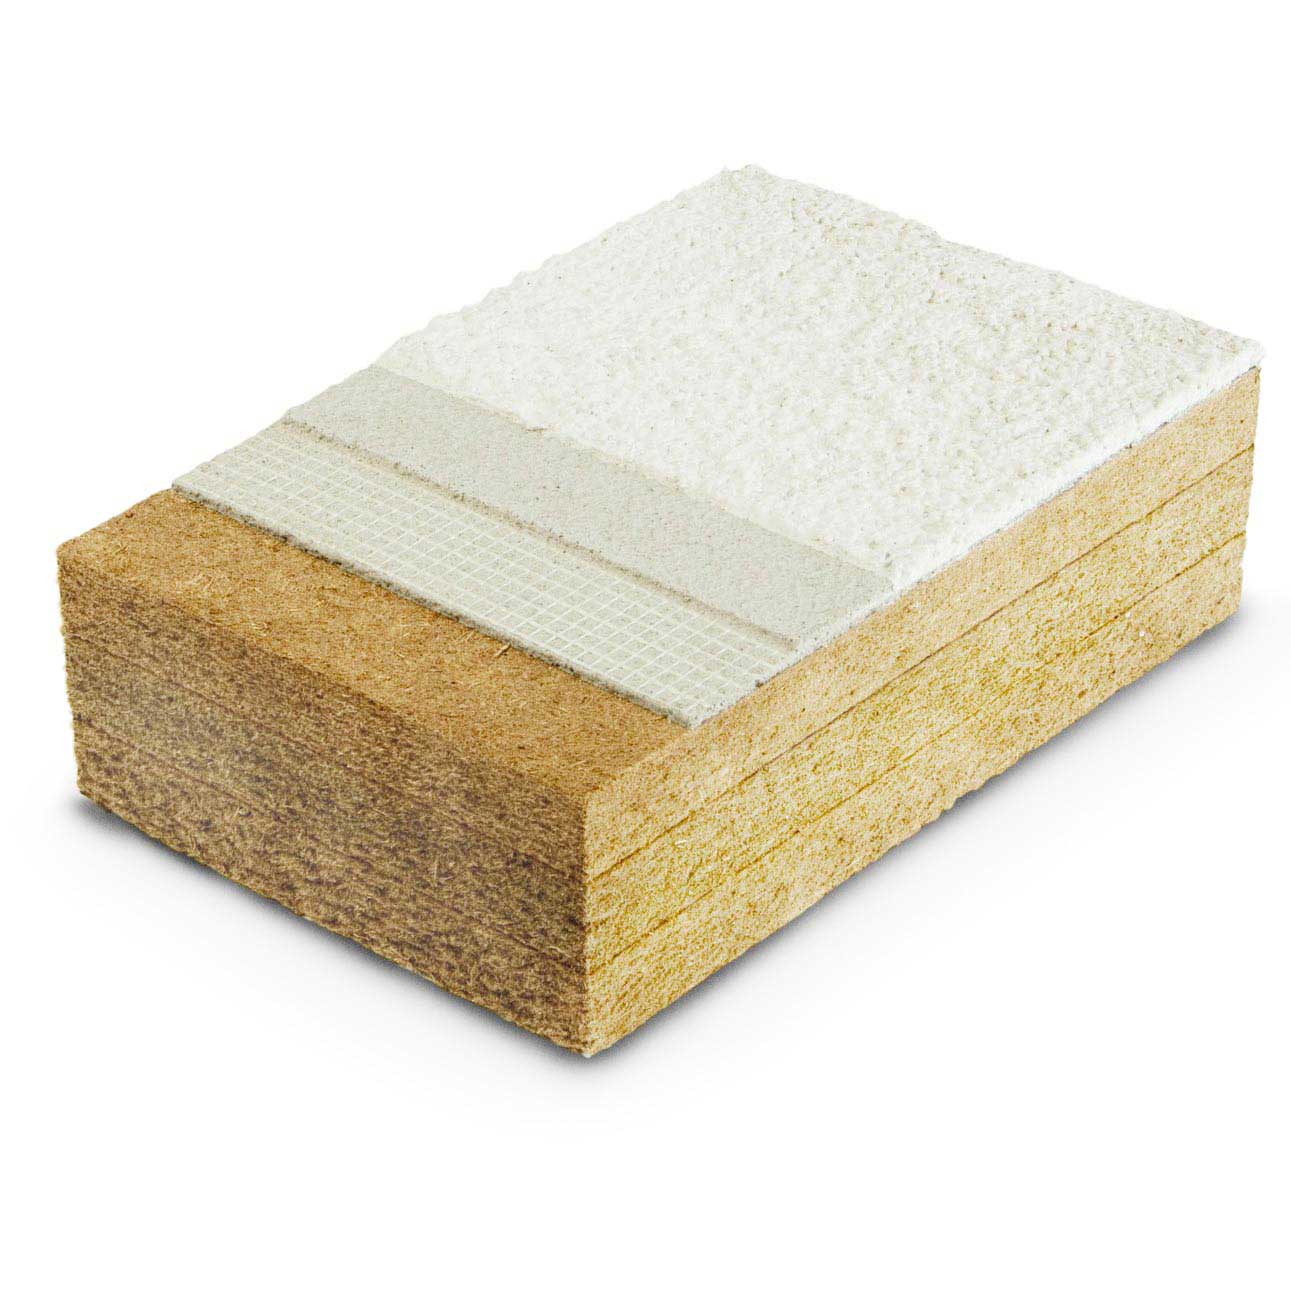 Pannelli in fibra di legno Protect dry densità 110, 140, 180kg/m³